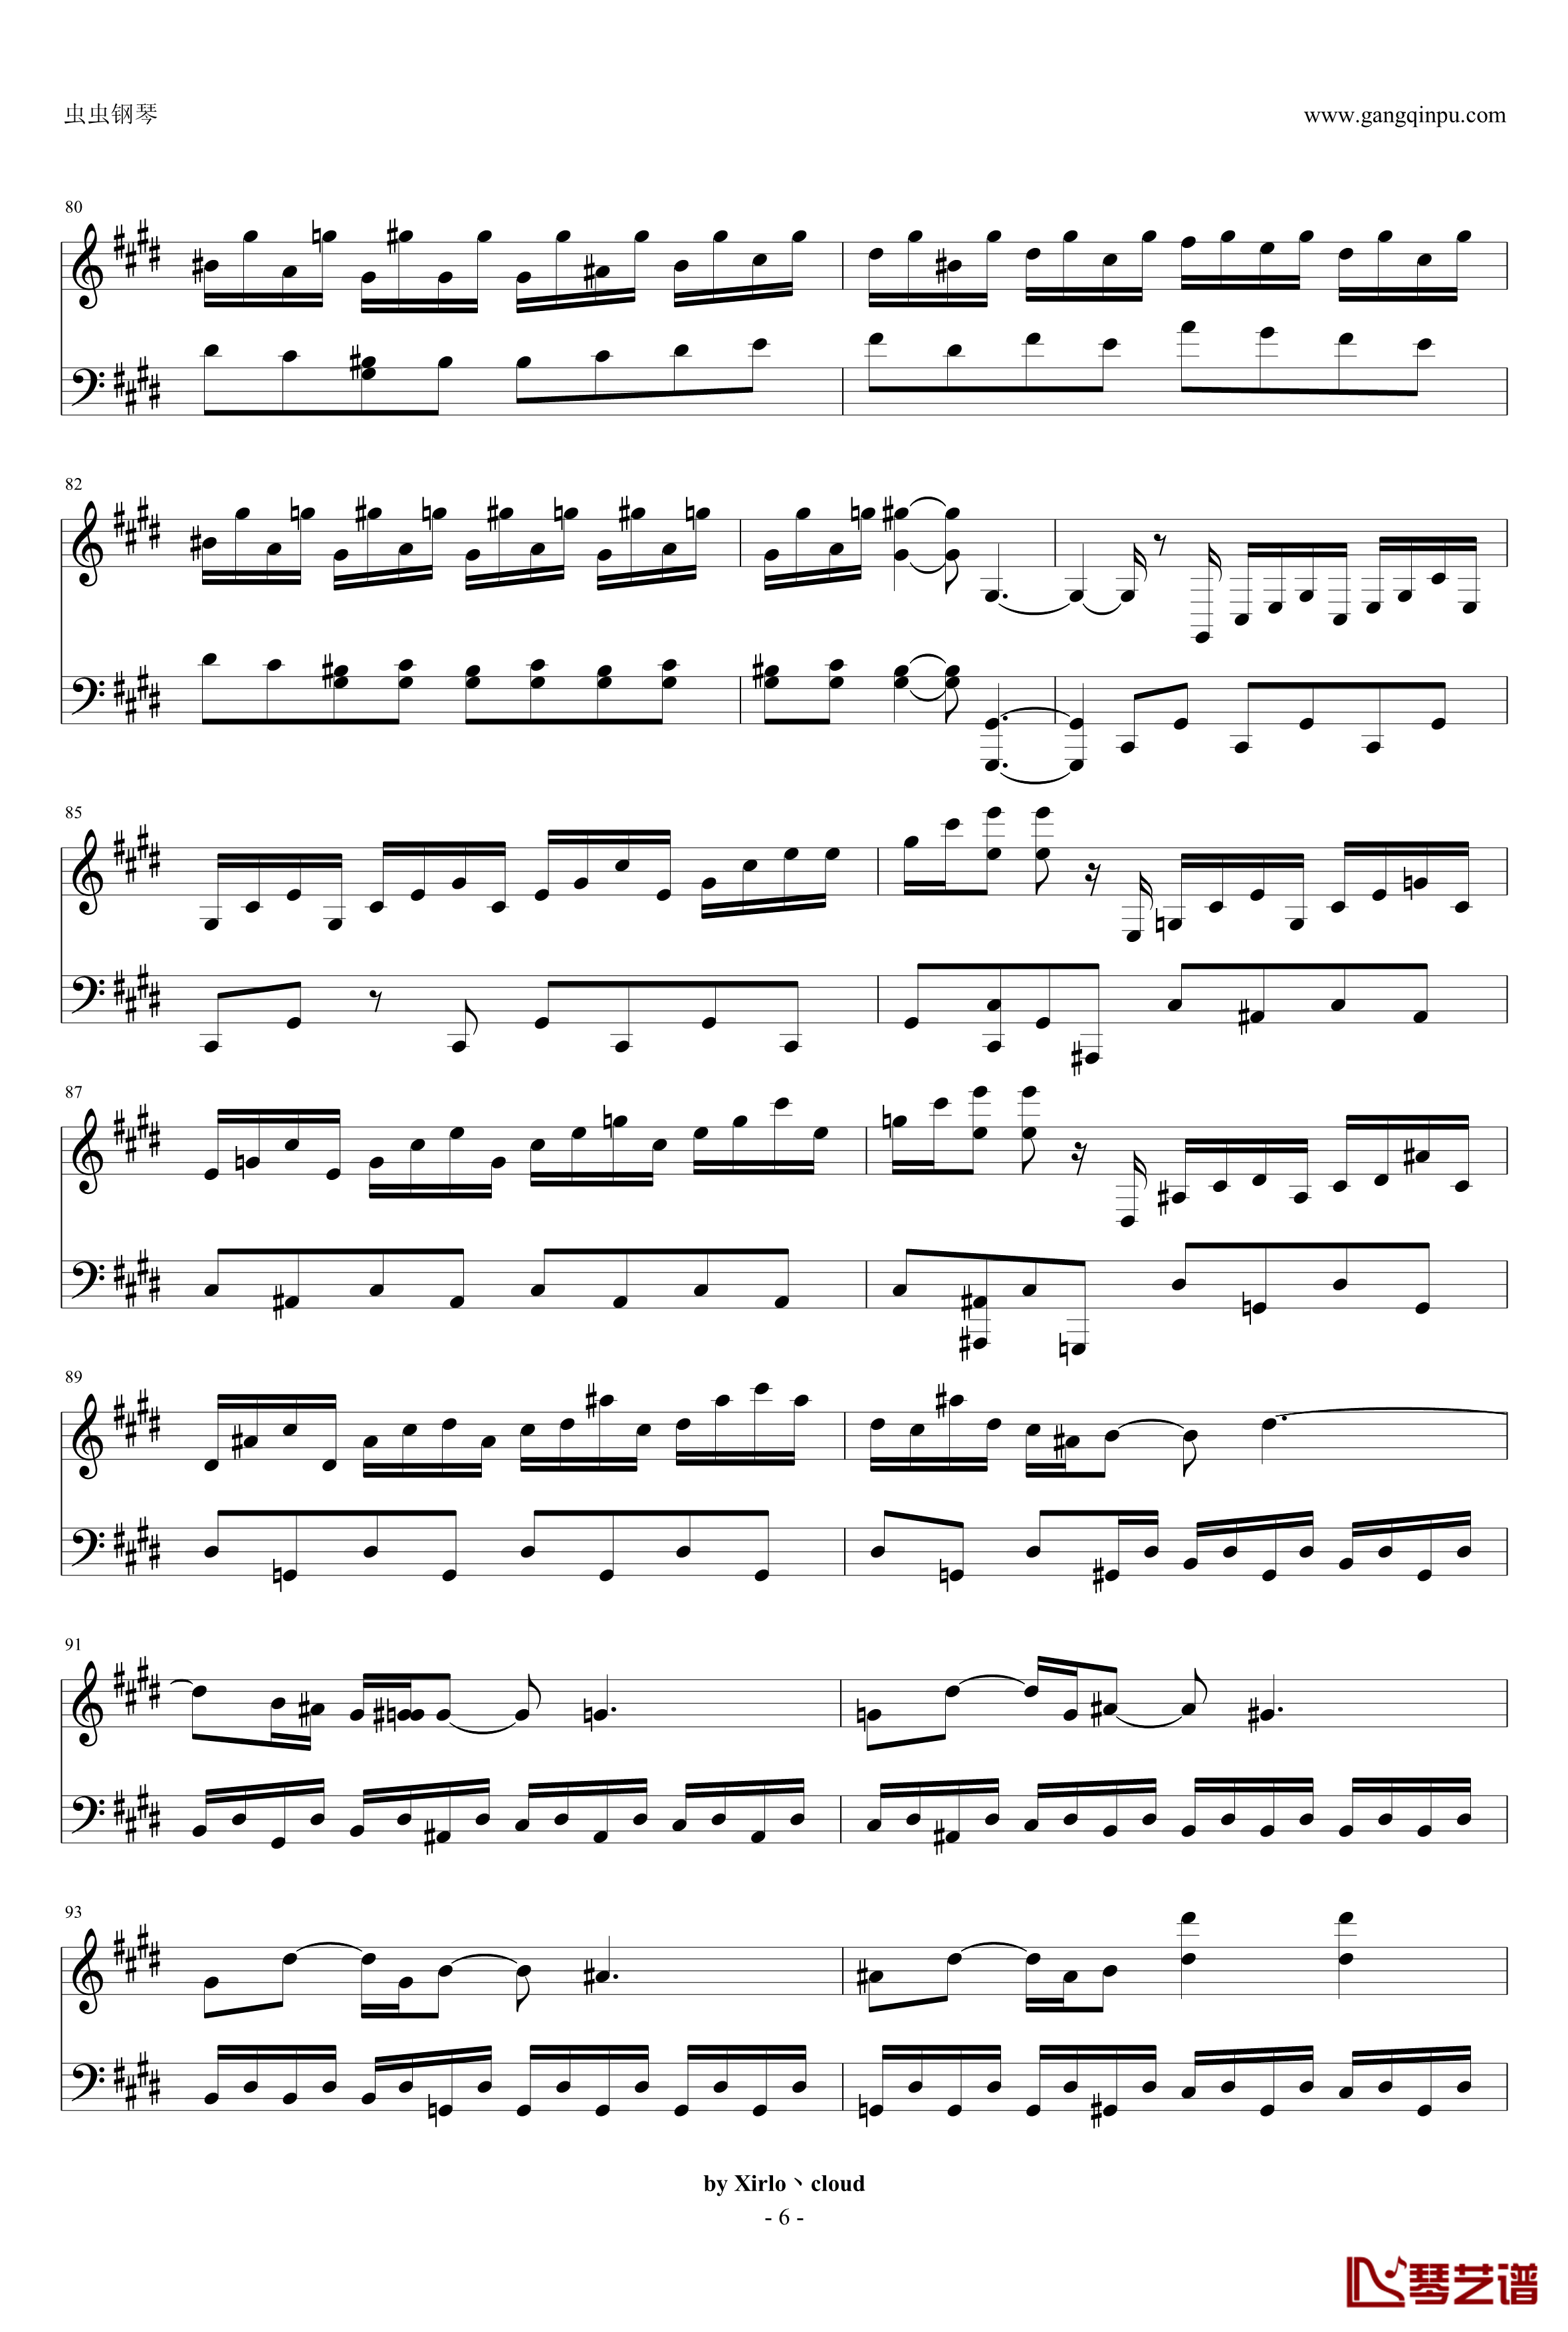 月光奏鸣曲钢琴谱-改编版-贝多芬-beethoven6